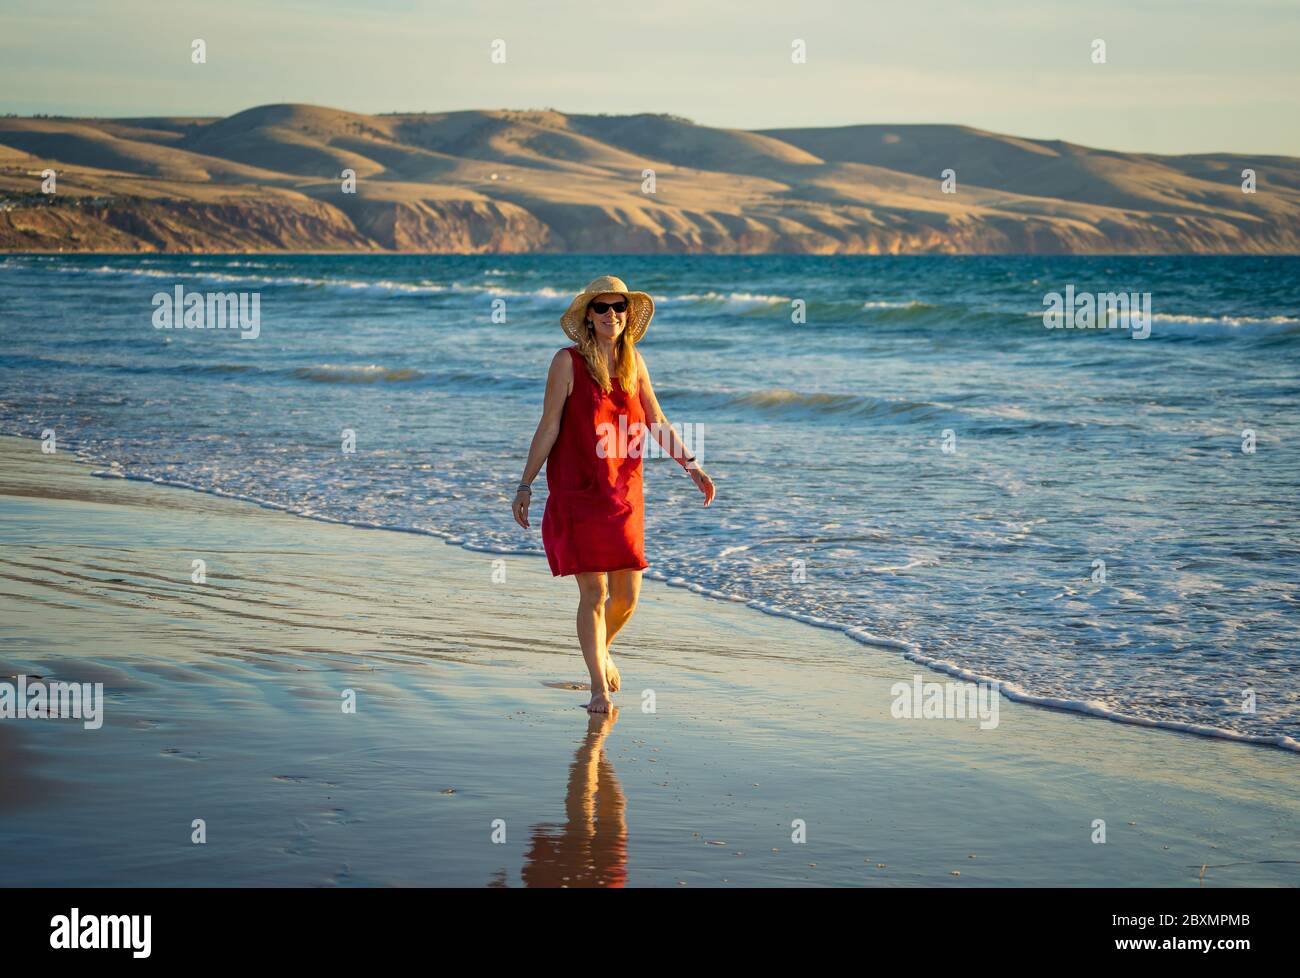 Heureuse femme mature attrayante en robe rouge appréciant l'extérieur et la liberté sur la plage, les bras ouverts s'étirent dans l'espoir après la quarantaine du coronavirus eas Banque D'Images